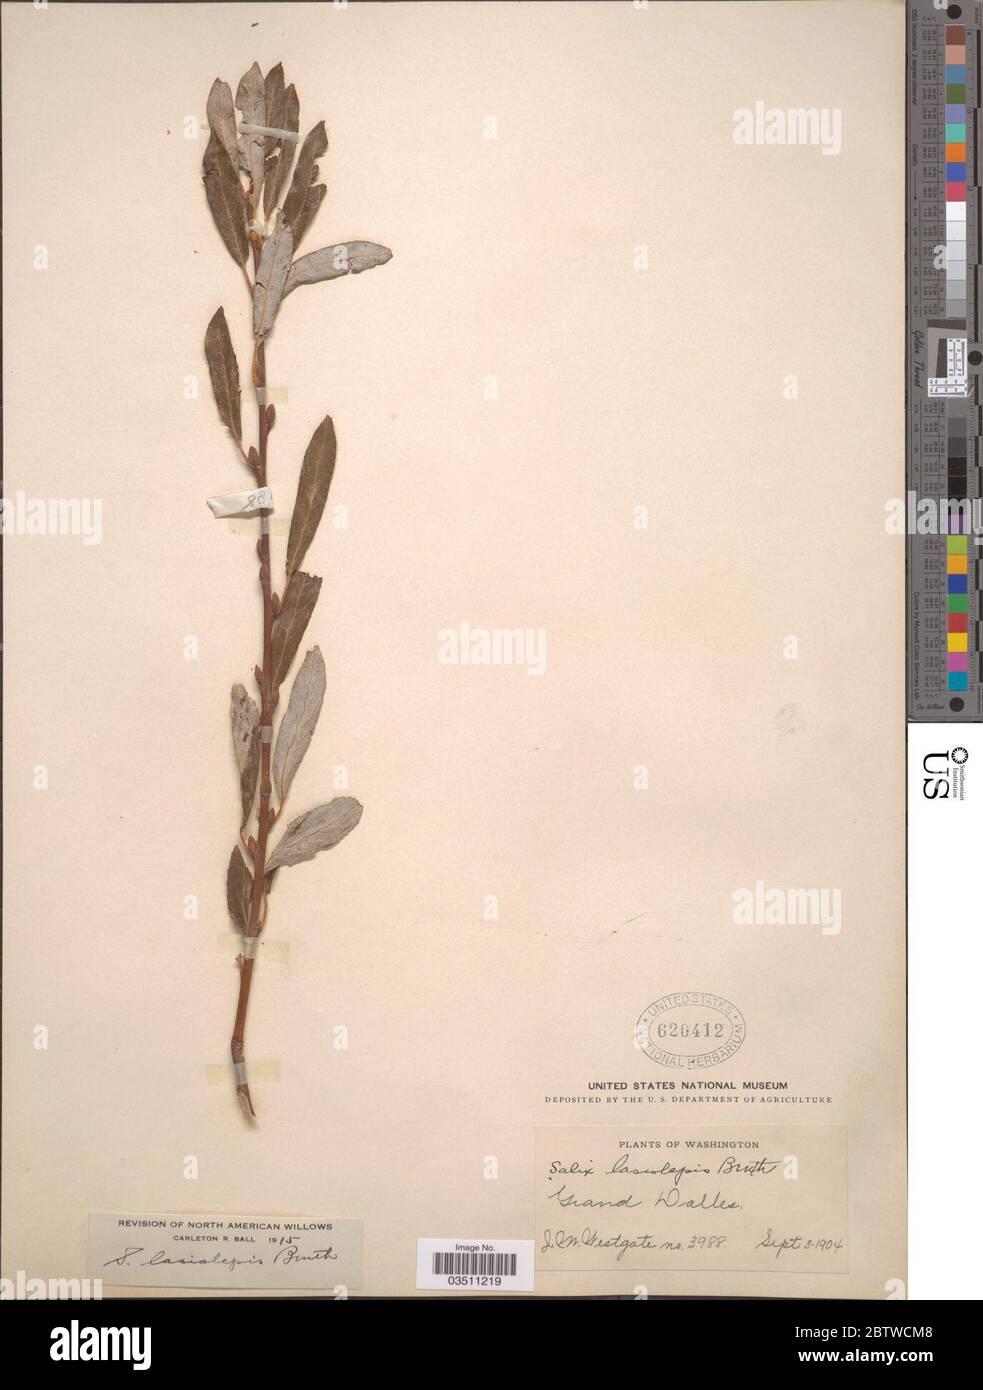 Salix lasiolepis Benth. Stock Photo